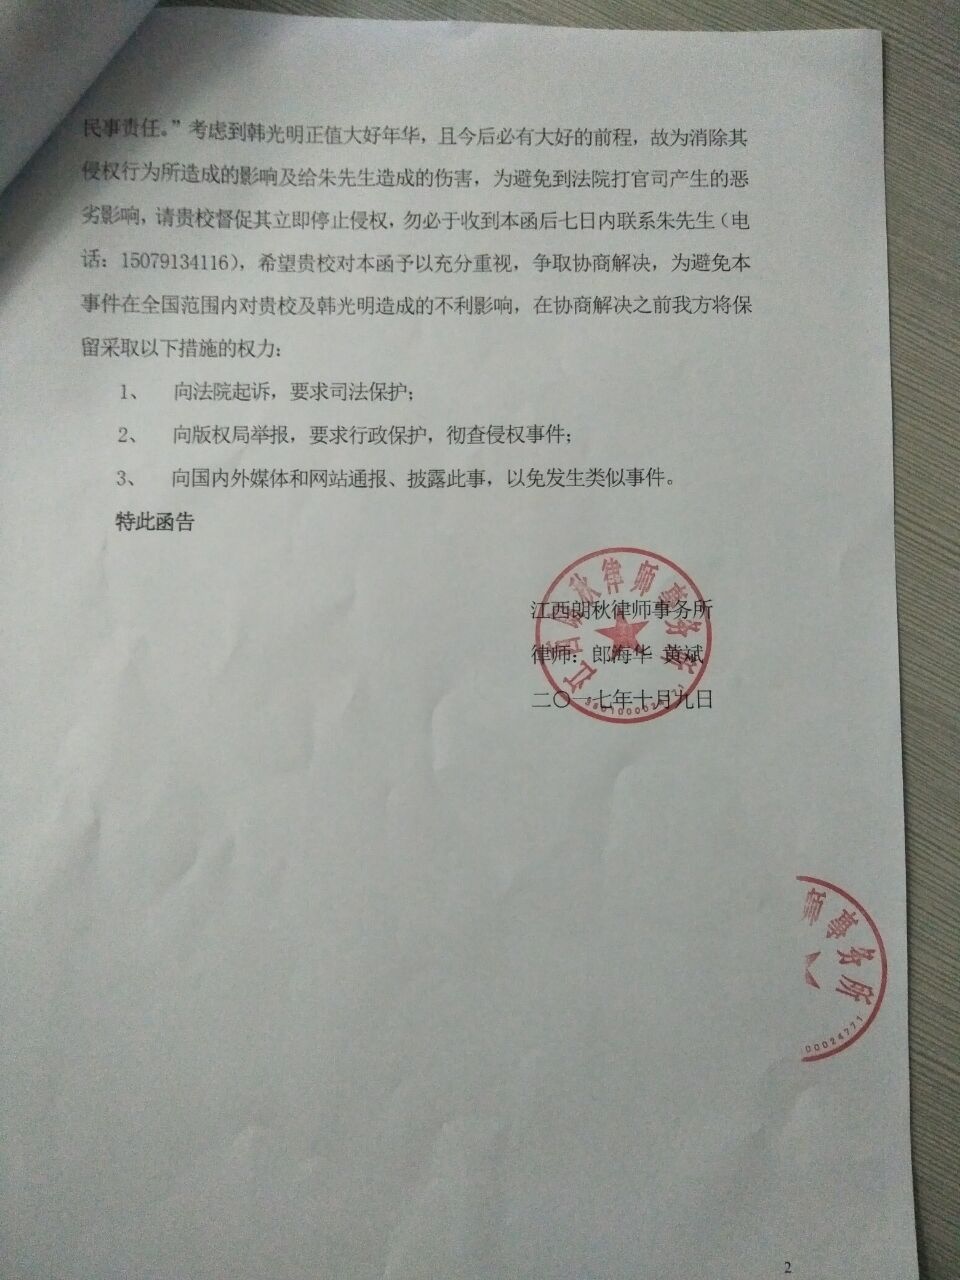 特此函告    江西朗秋律师事务所  律师:郎海华    黄斌  二一七年